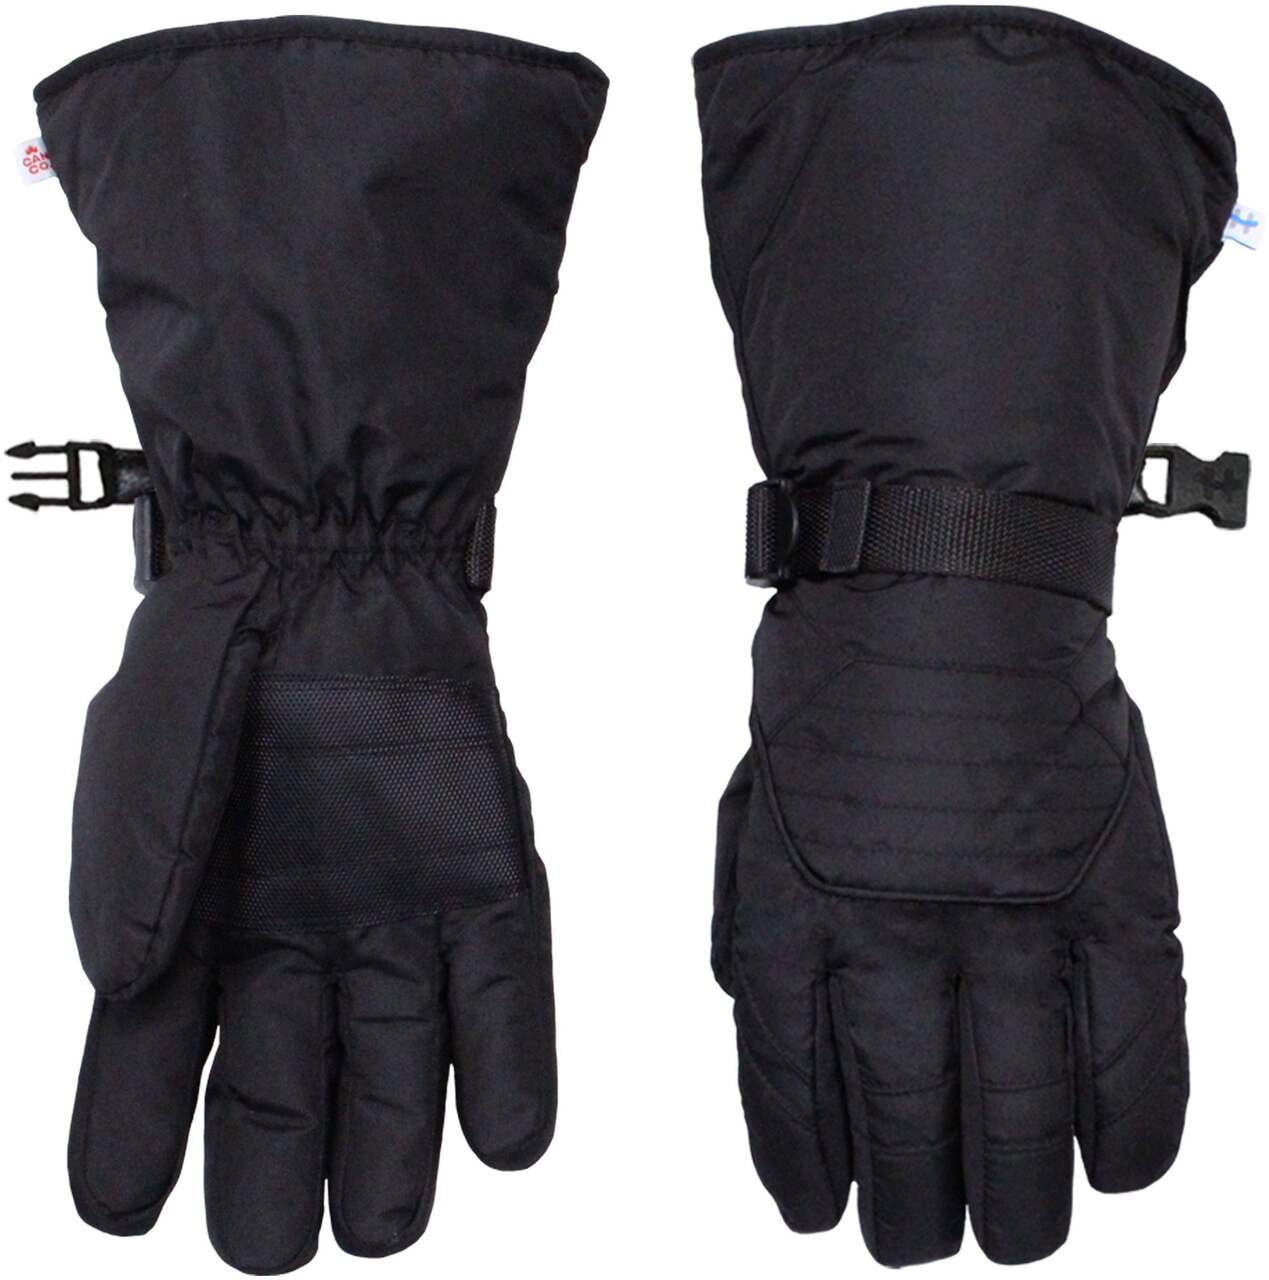 Hot Paws Men's Convertible Thermal Fleece Knit Flip Top Winter Mittens  Fingerless Gloves